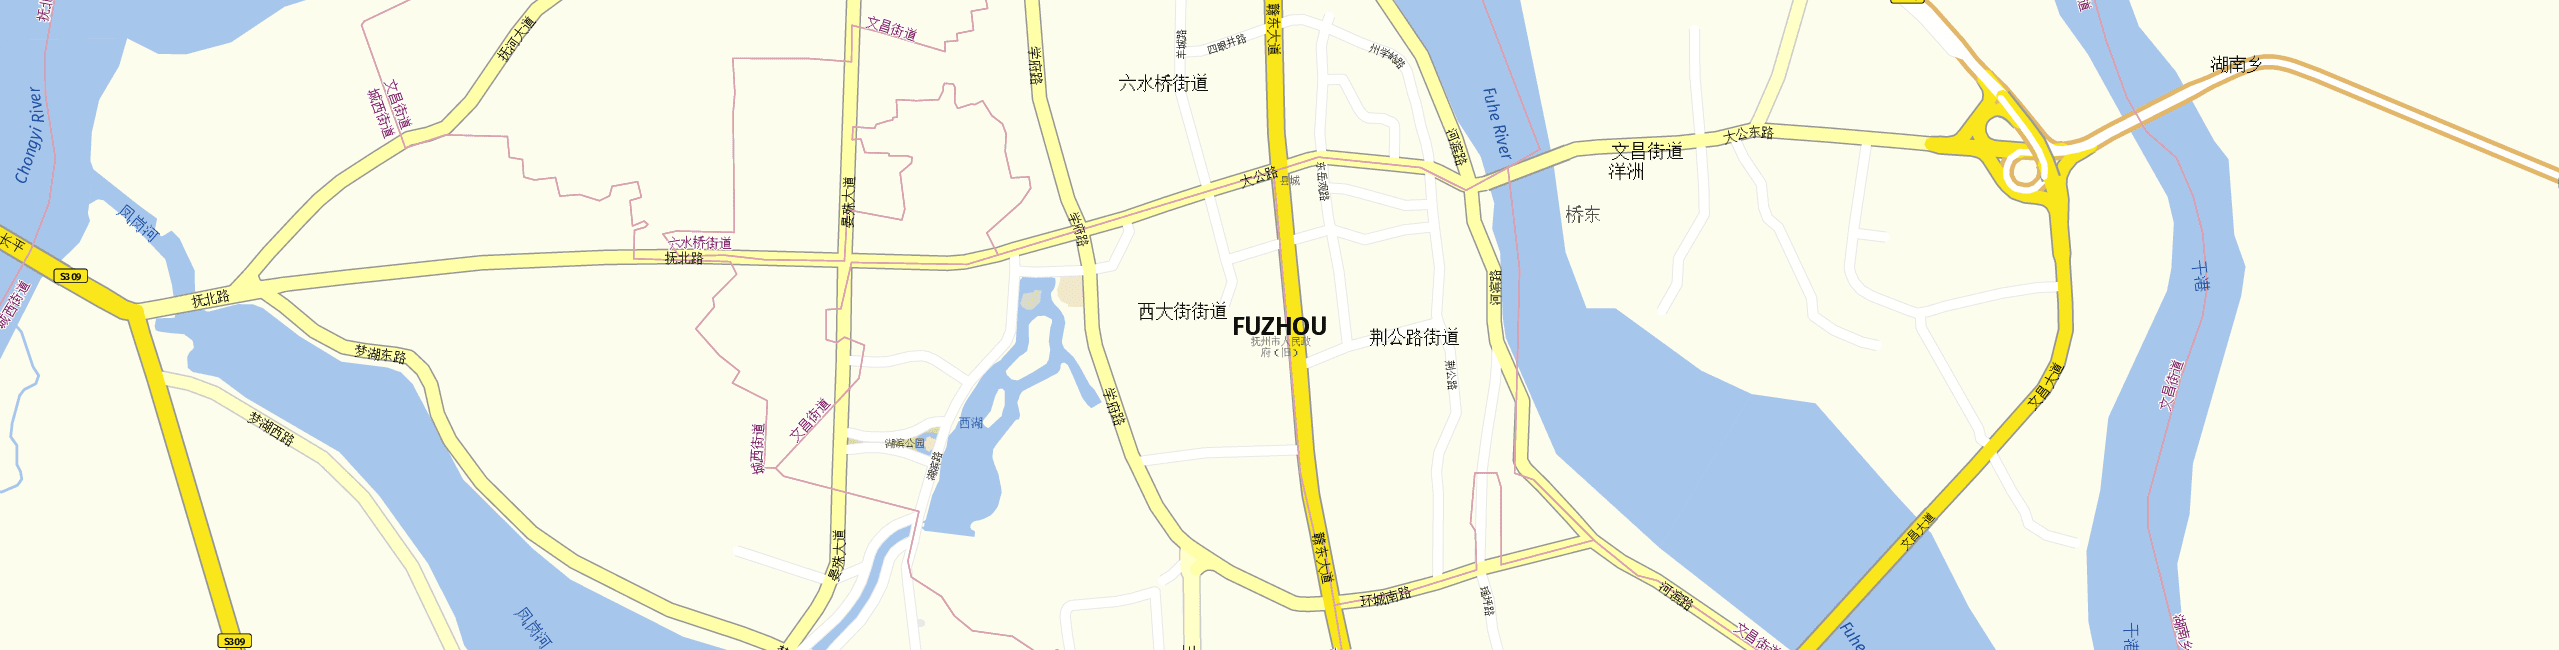 Stadtplan Fuzhou zum Downloaden.